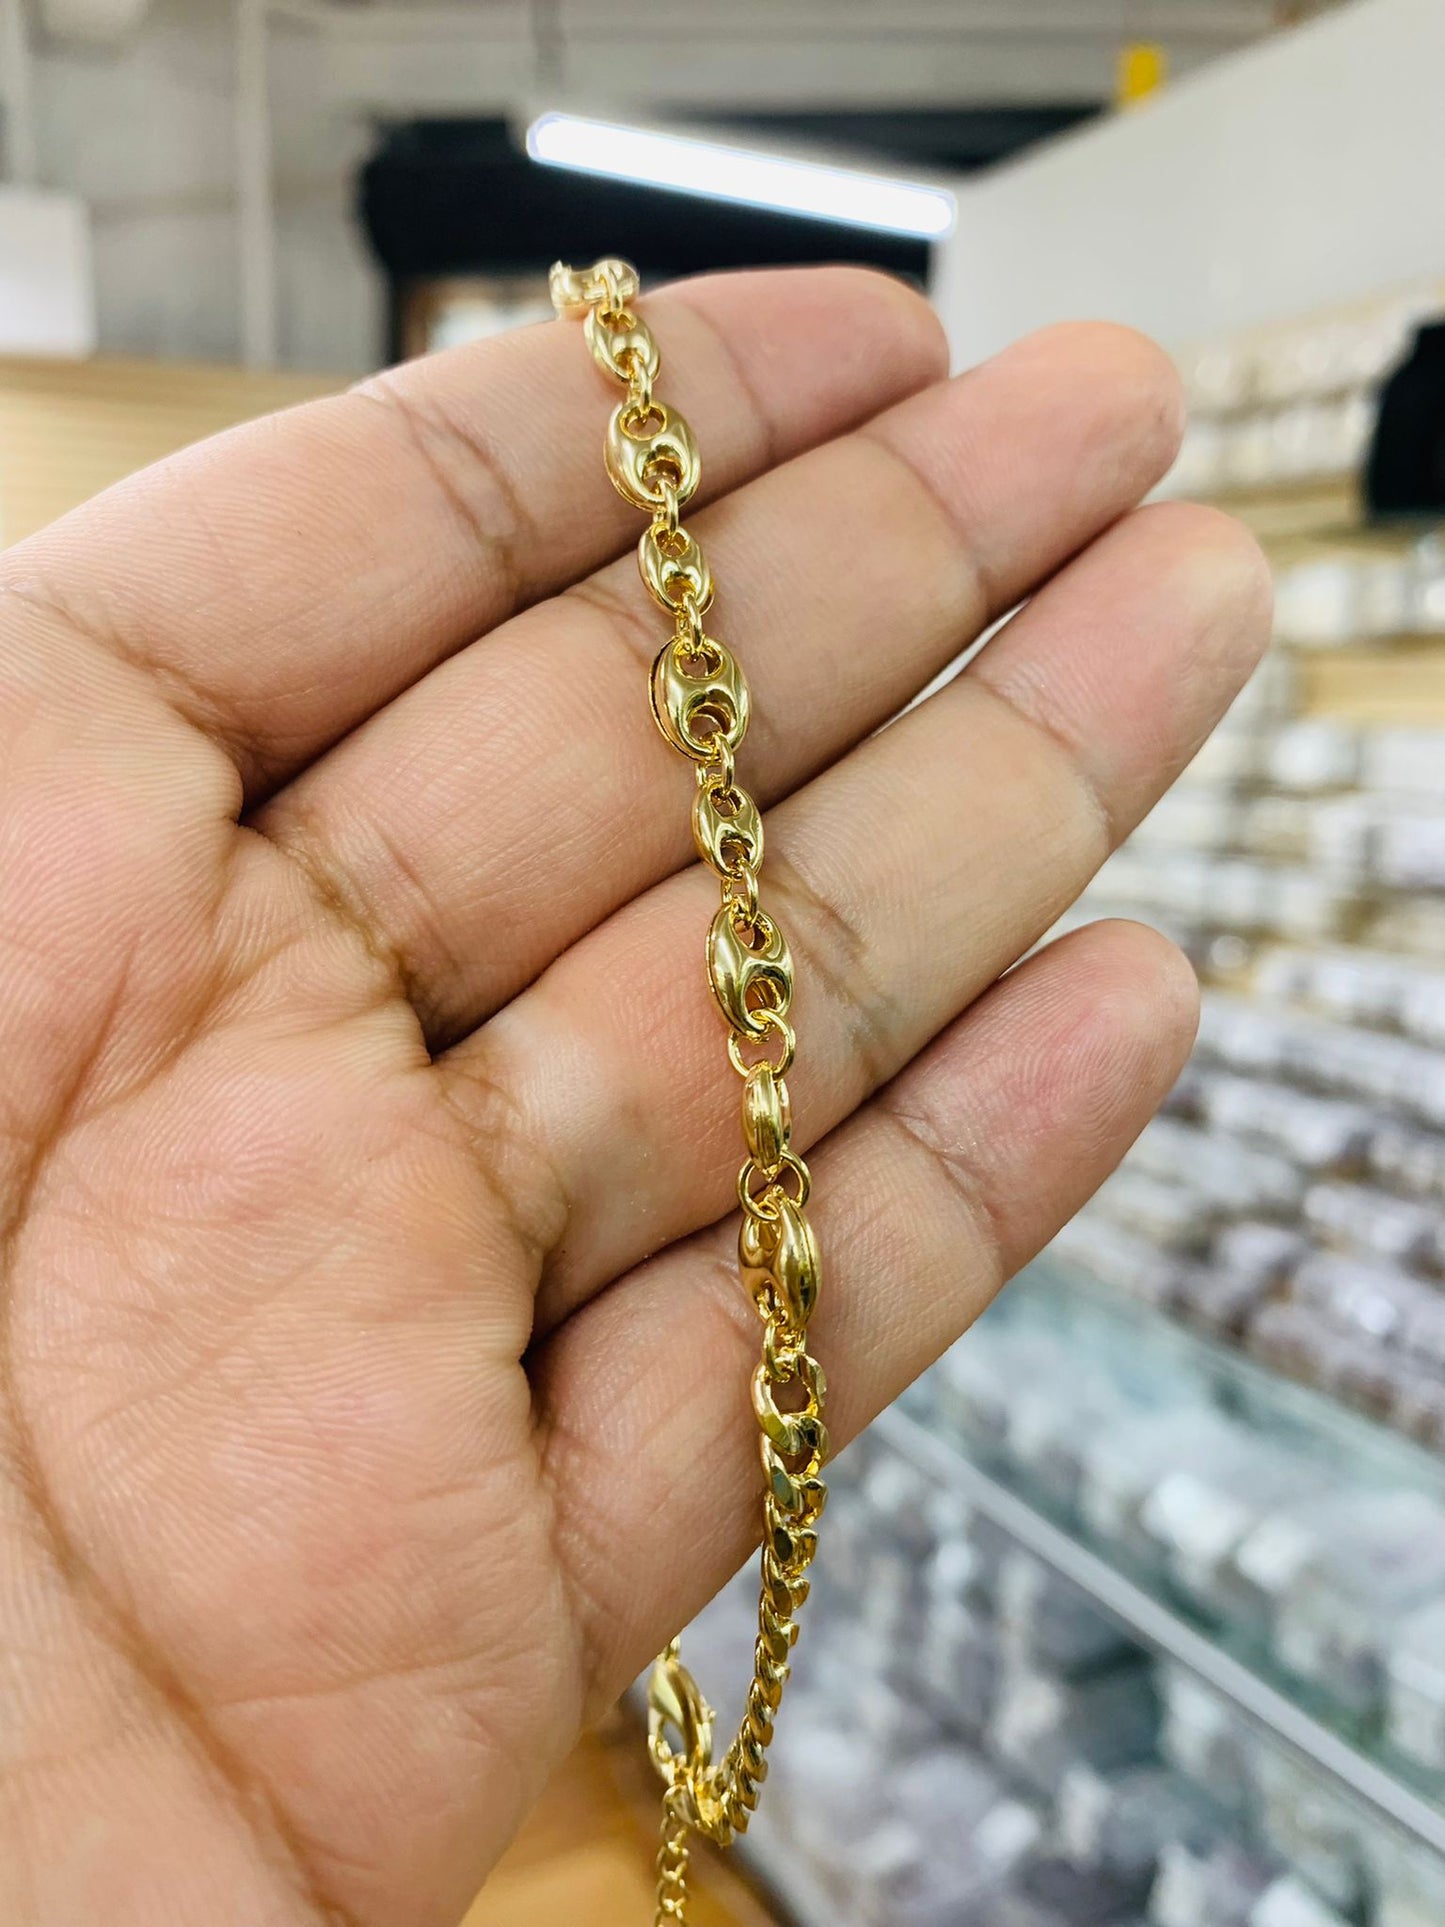 10" Mariner Link Chain Anklet Bracelet for Womens Ladies Girls in Gold Filled Bracelet for Foot Everyday Bracelet Gold Anklet Pulsera de Pie